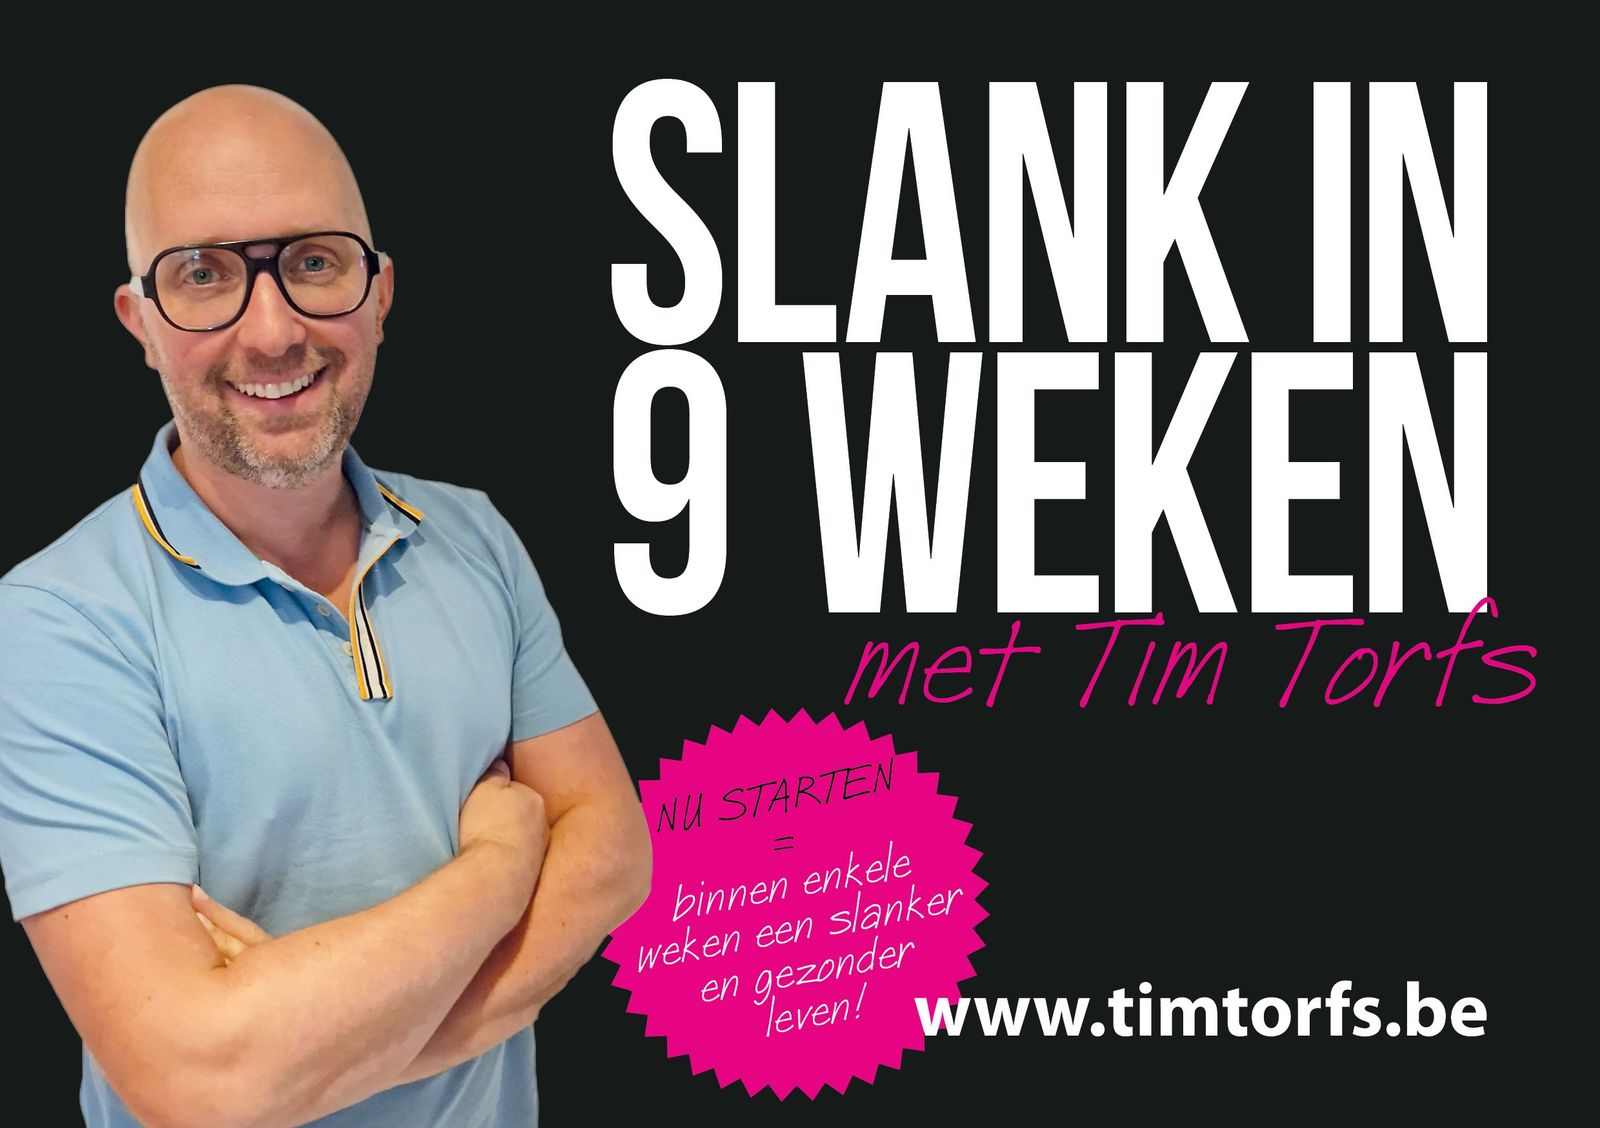 Slank in 9 weken met Tim Torfs = kiezen voor een mooi resultaat ook op lange termijn